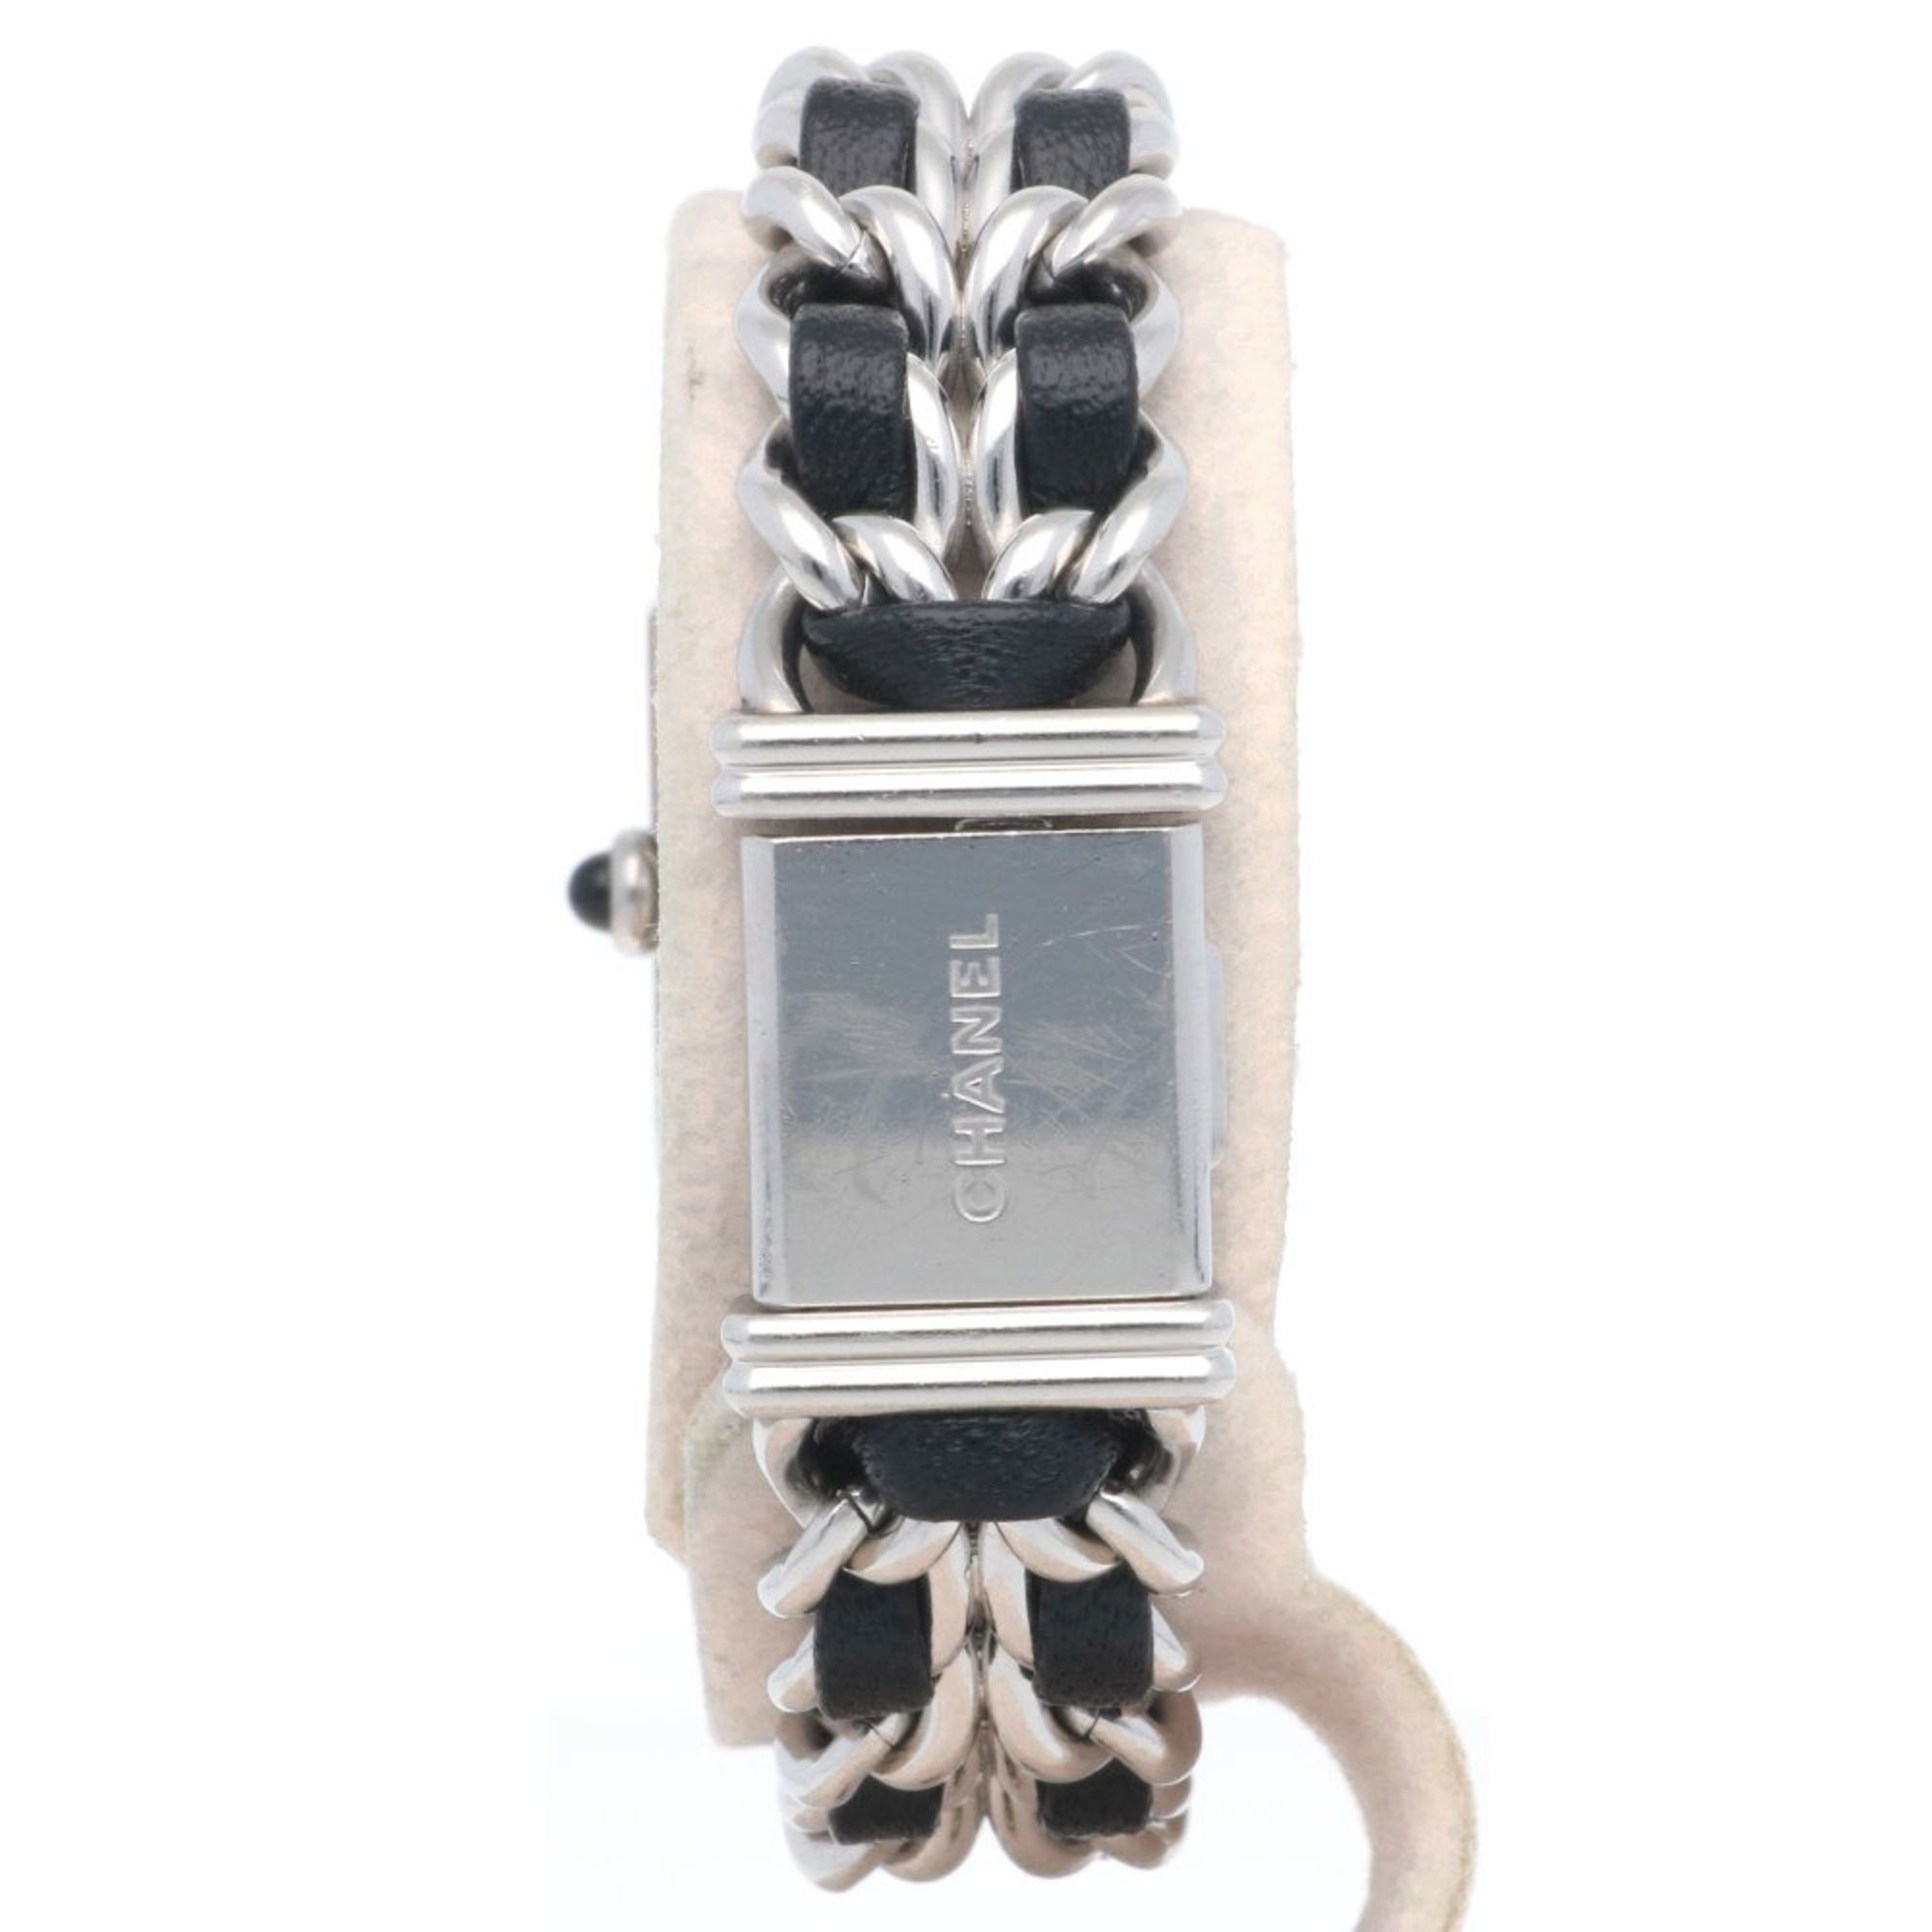 Chanel Premiere M Watch Stainless Steel H0451 Quartz Ladies CHANEL Defective Item Bracelet